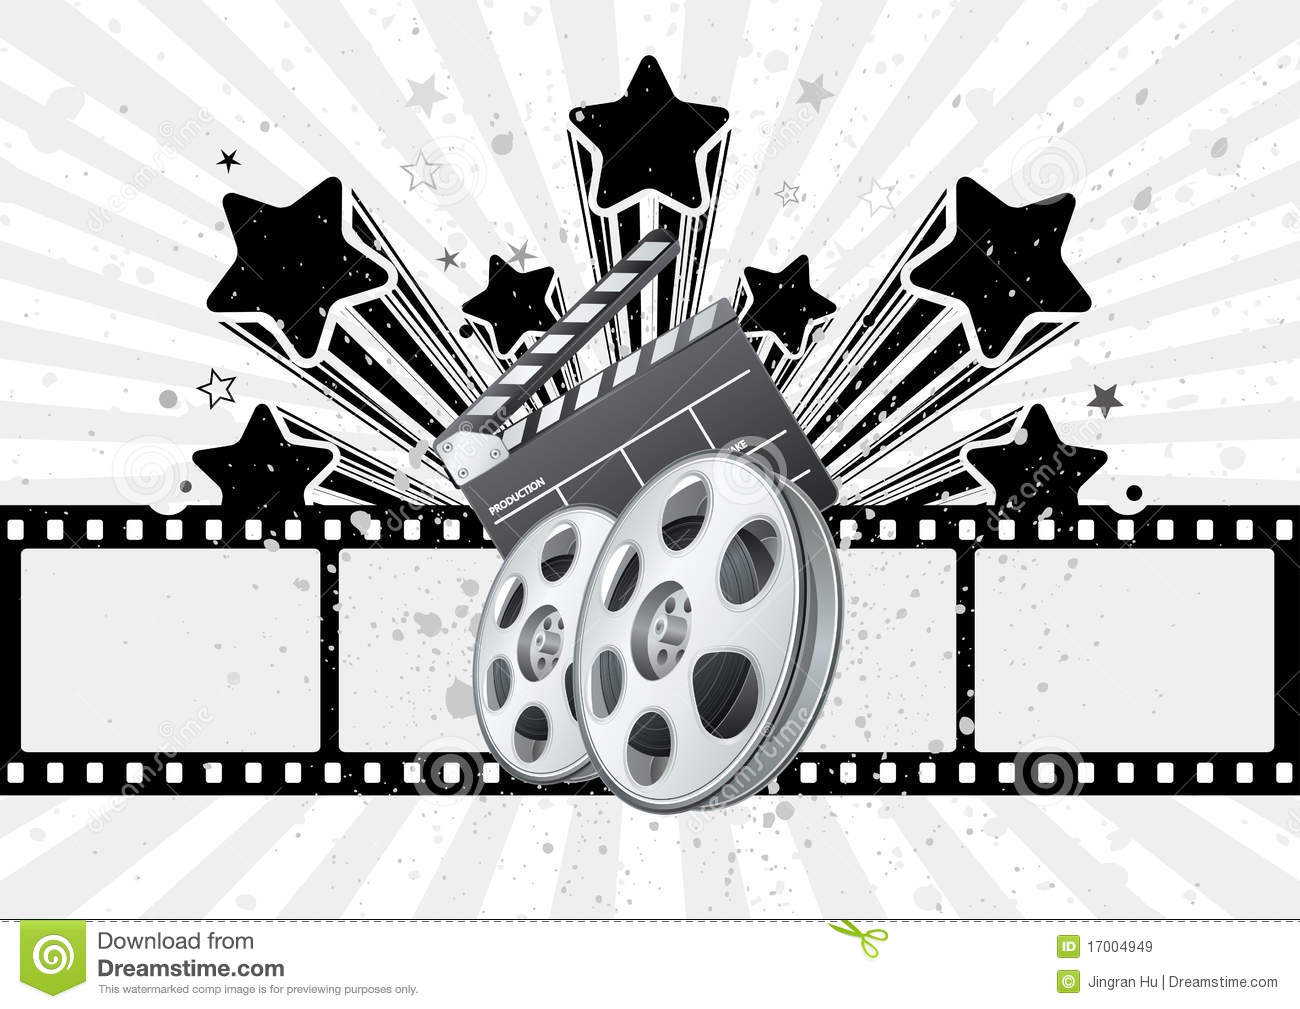 hintergrundbild zum thema film,schwarz und weiß,rad,kfz radsystem,illustration,fahrzeug